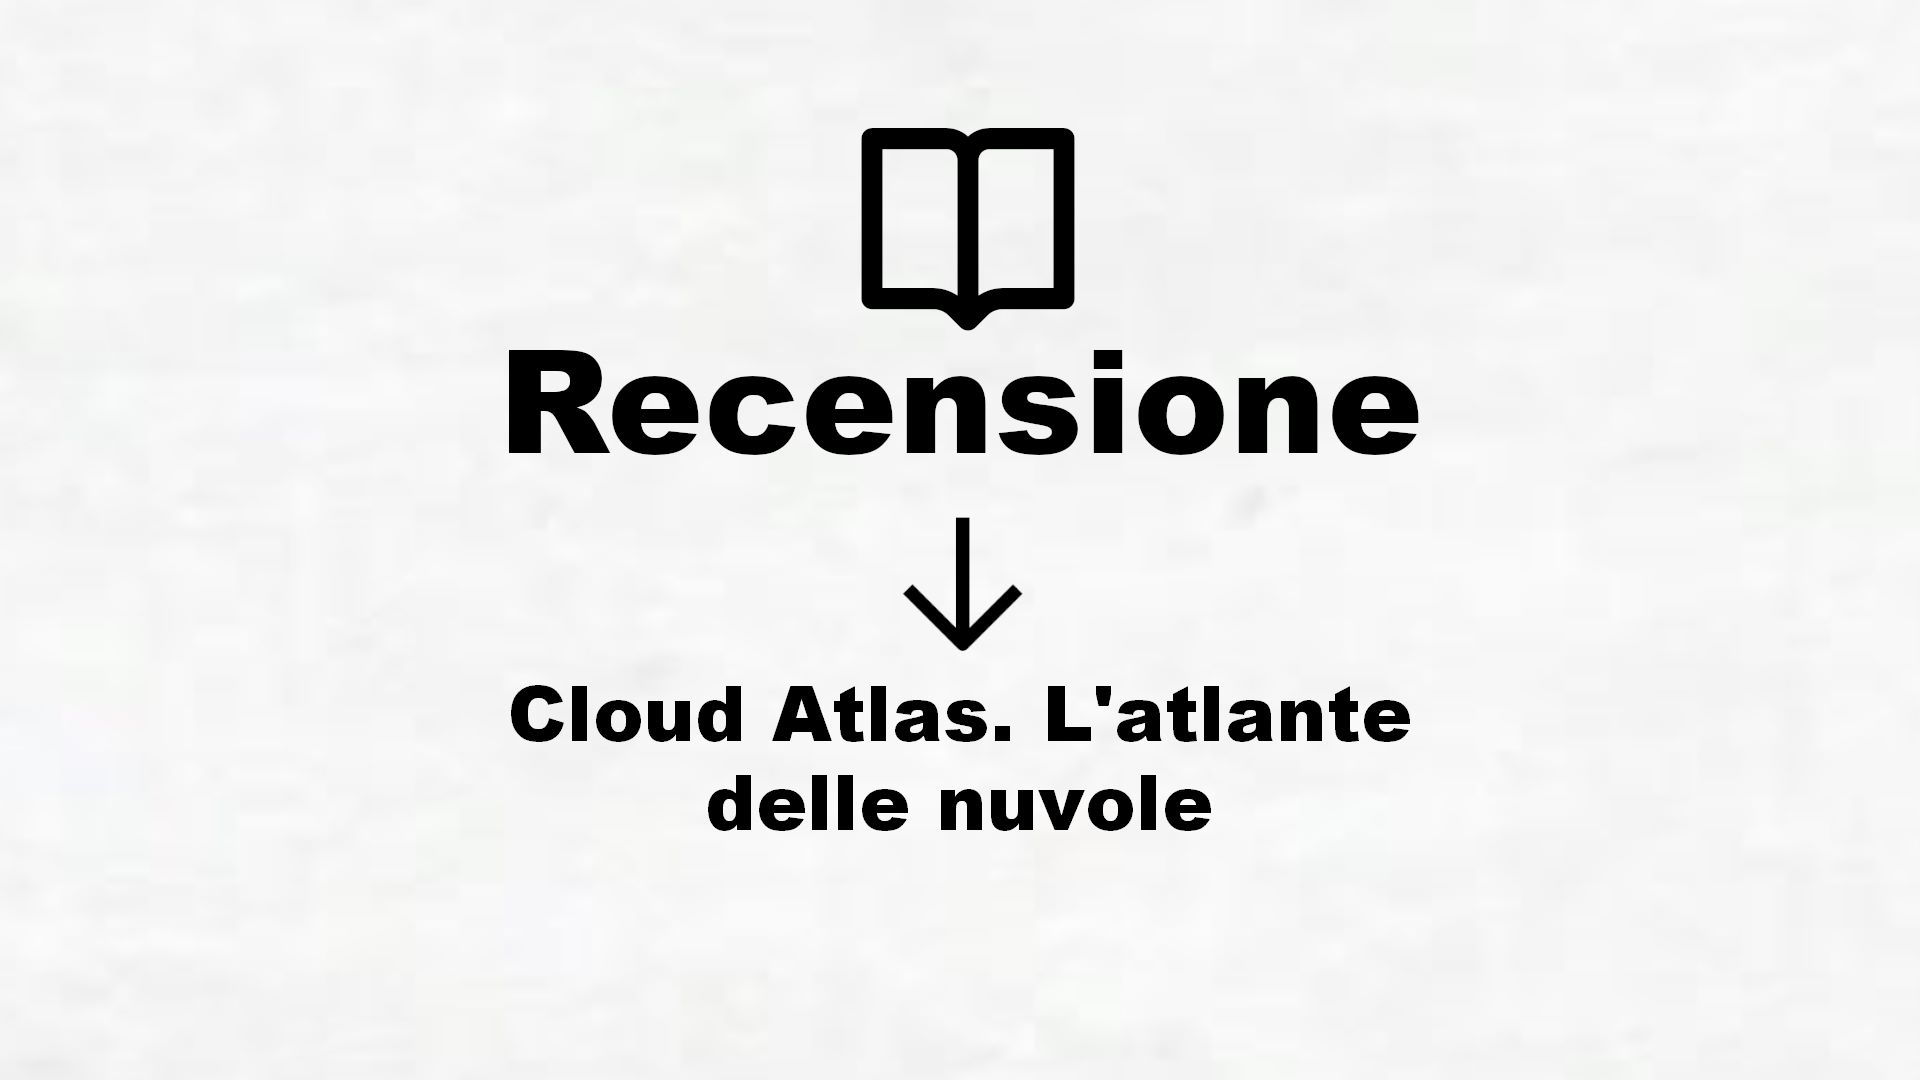 Cloud Atlas. L’atlante delle nuvole – Recensione Libro